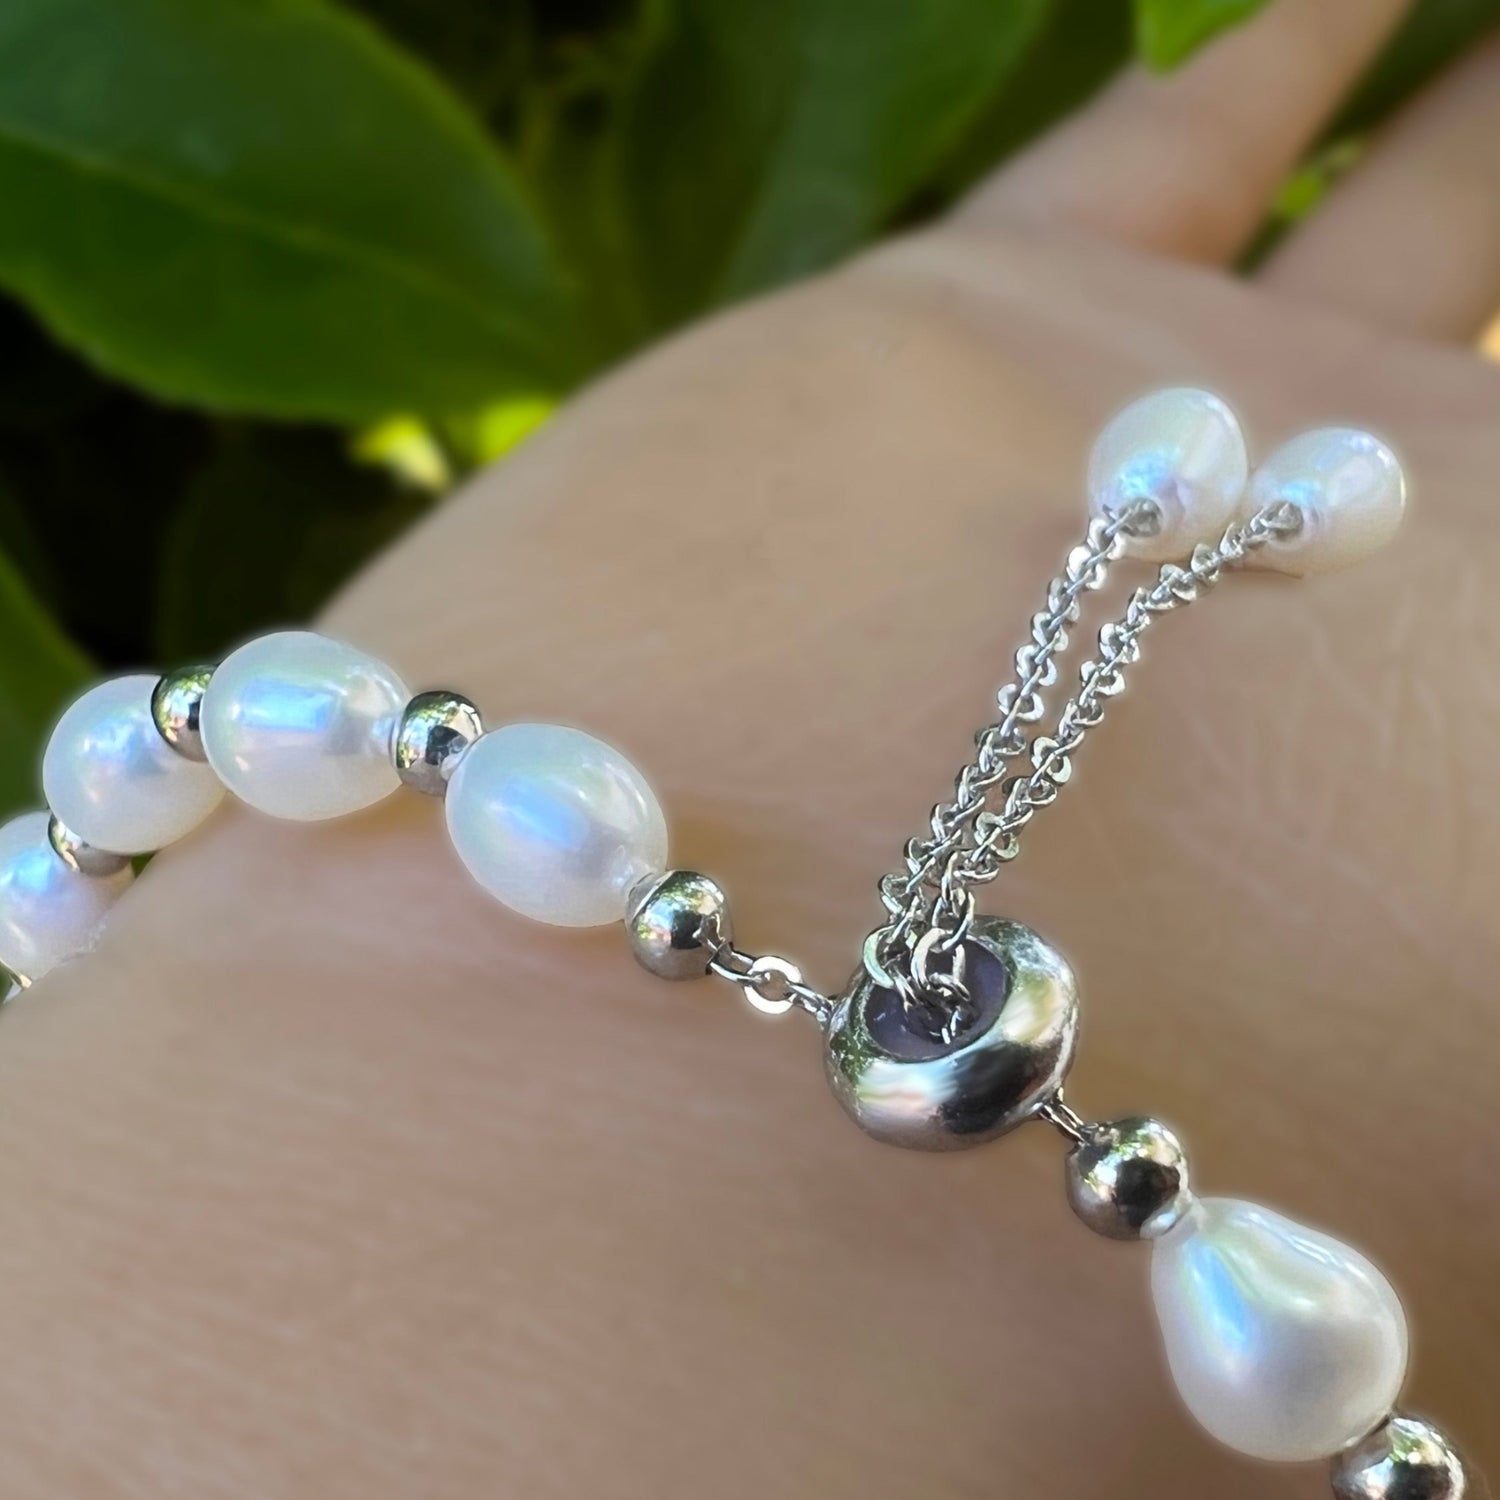 Jersey Pearl - Pearl Bracelet